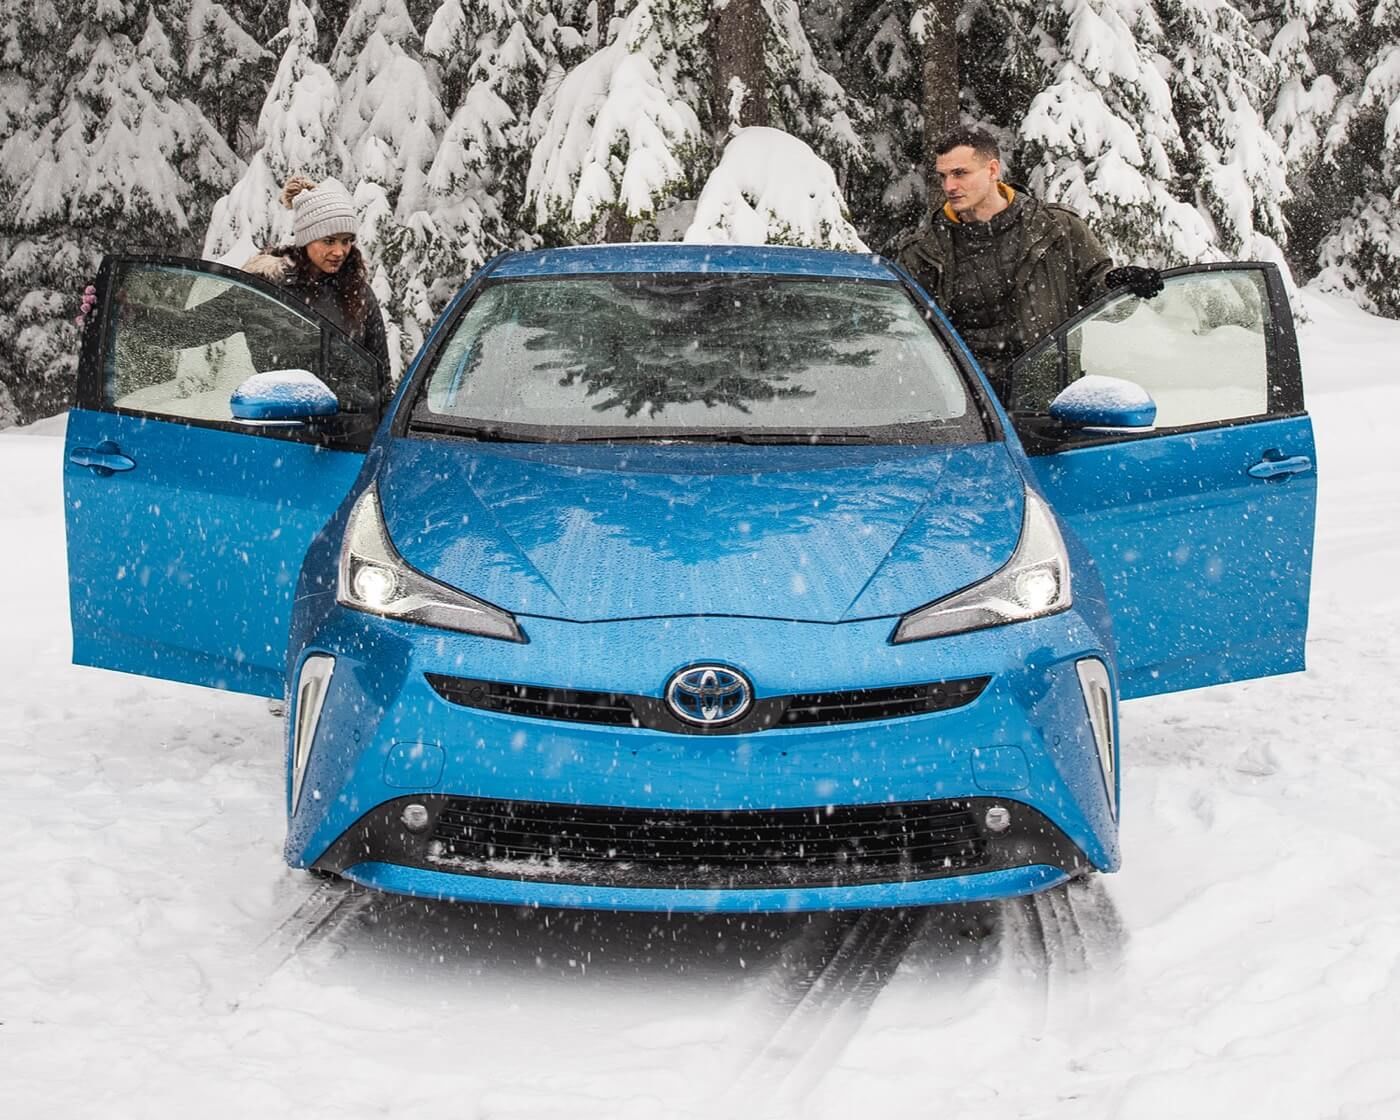 Vue avant d'une berline hybride Toyota Prius 2022 bleue avec un couple embarquant dans le véhicule sous la neige